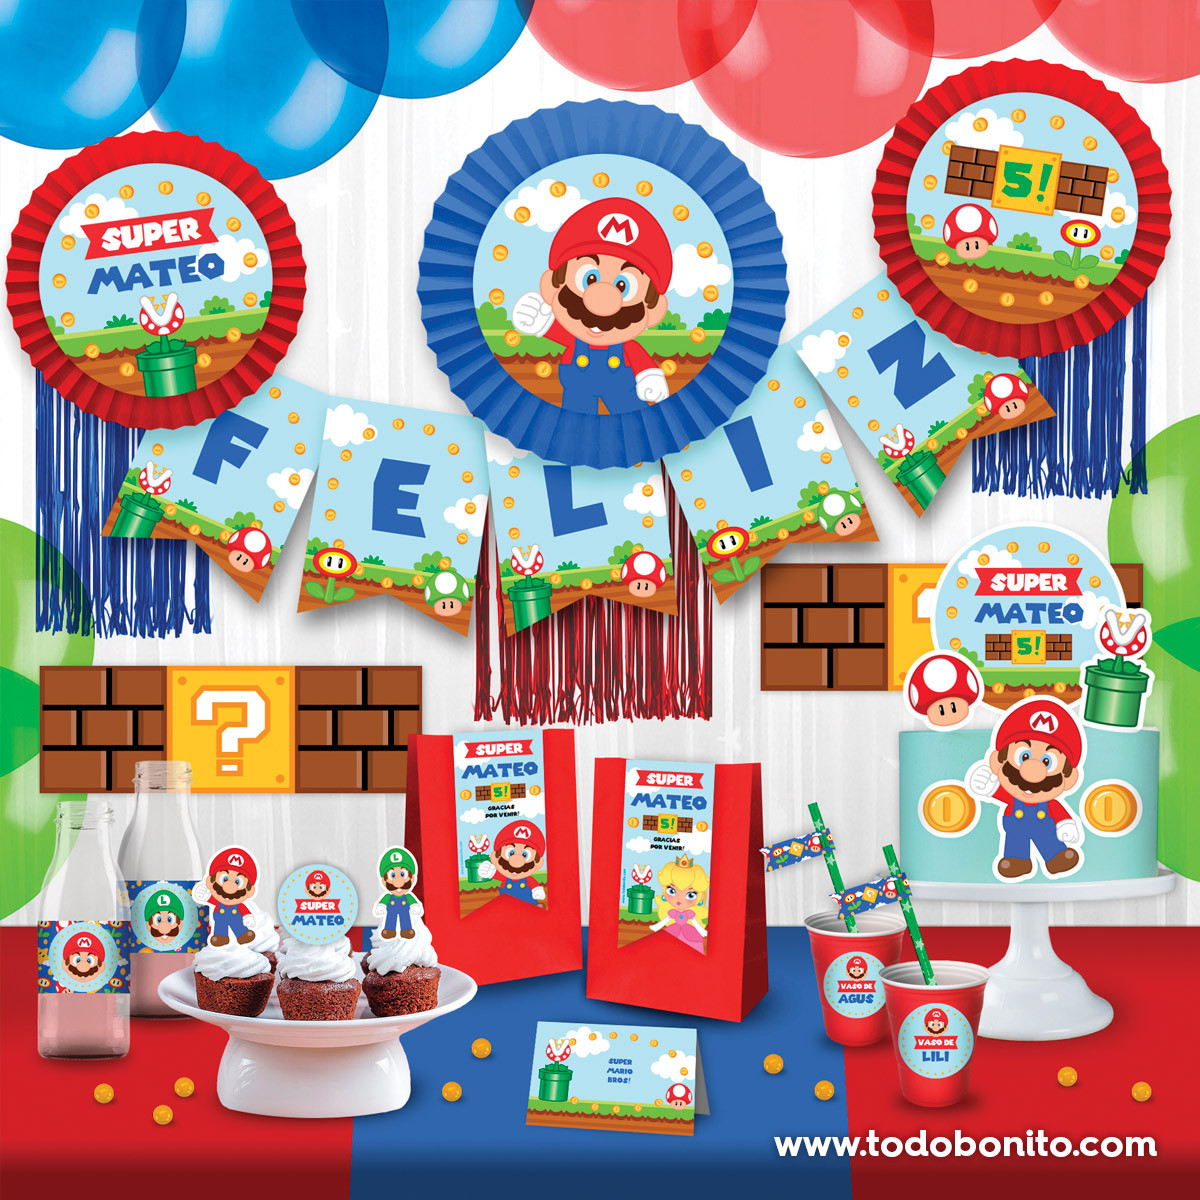 48 Originales ideas para decorar Fiesta de Super Mario  Fiesta de mario  bros, Decoracion de mario bros, Cumple de mario bros